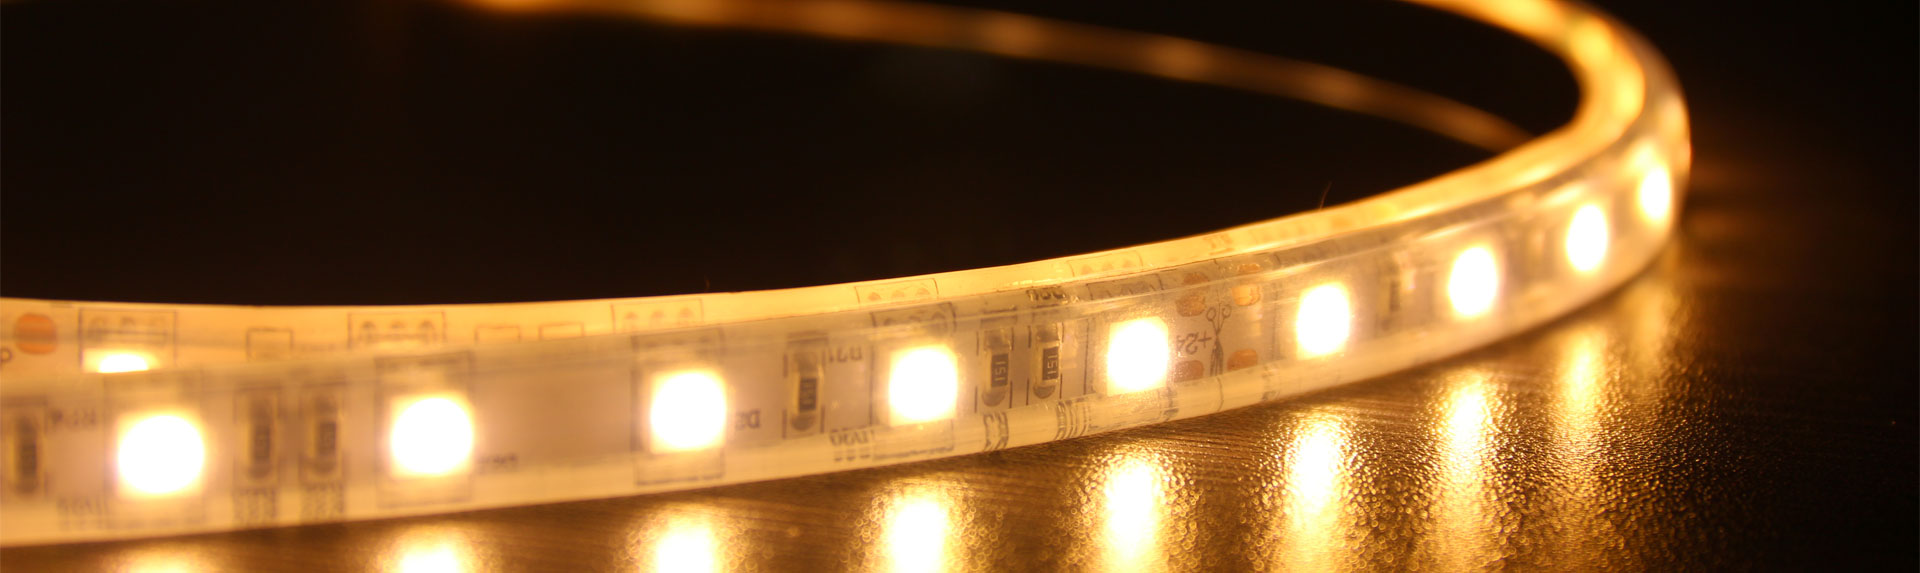 ip68 waterproof led strip lights - LUGISK Strip